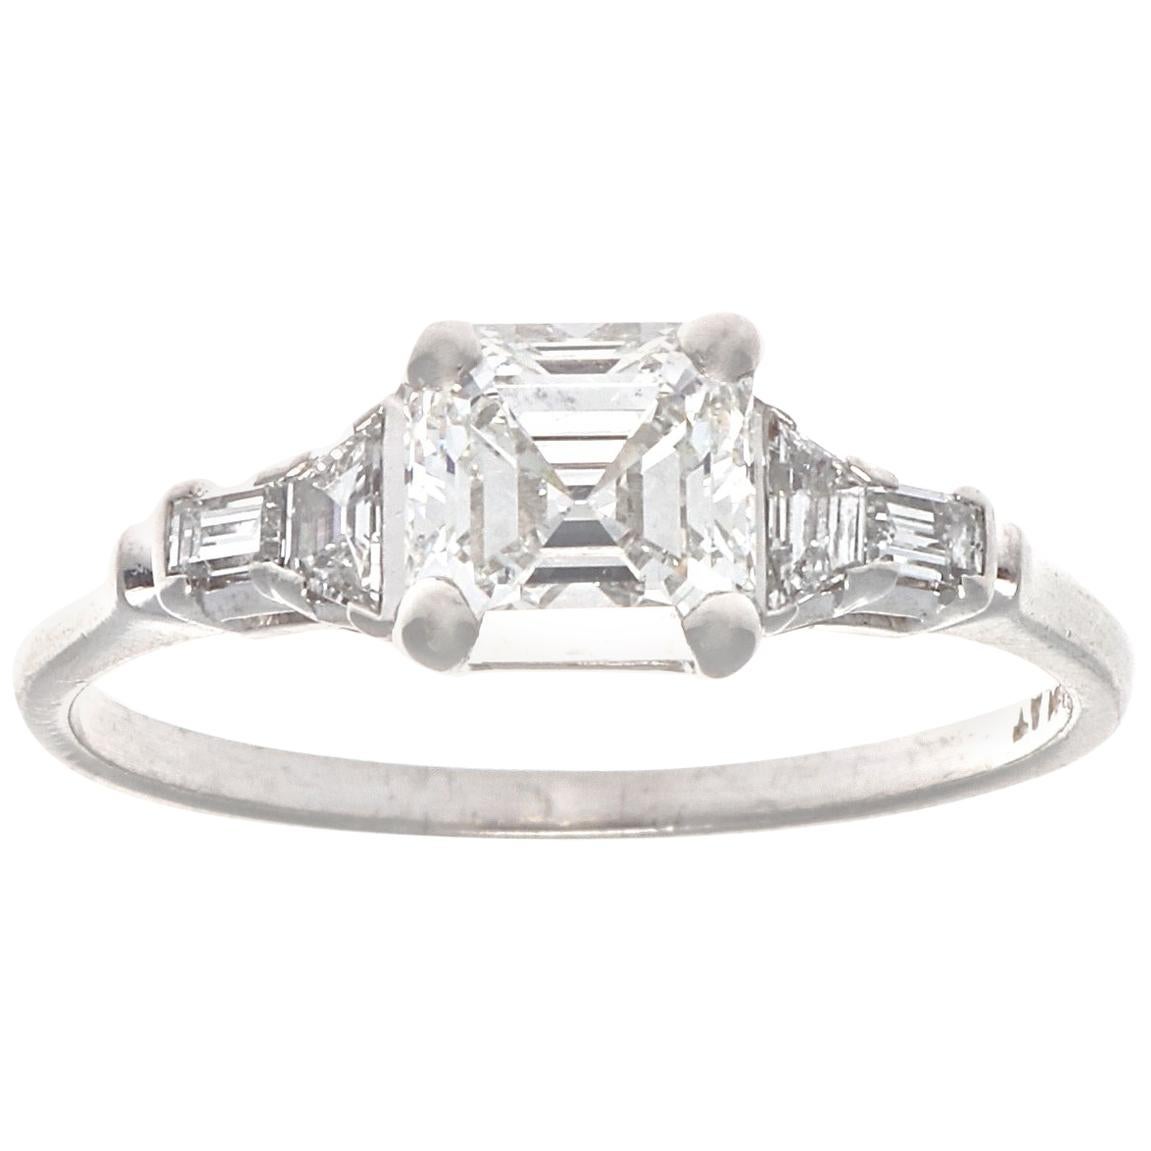 Art Deco GIA 1.03 Carat Diamond Platinum Engagement Ring